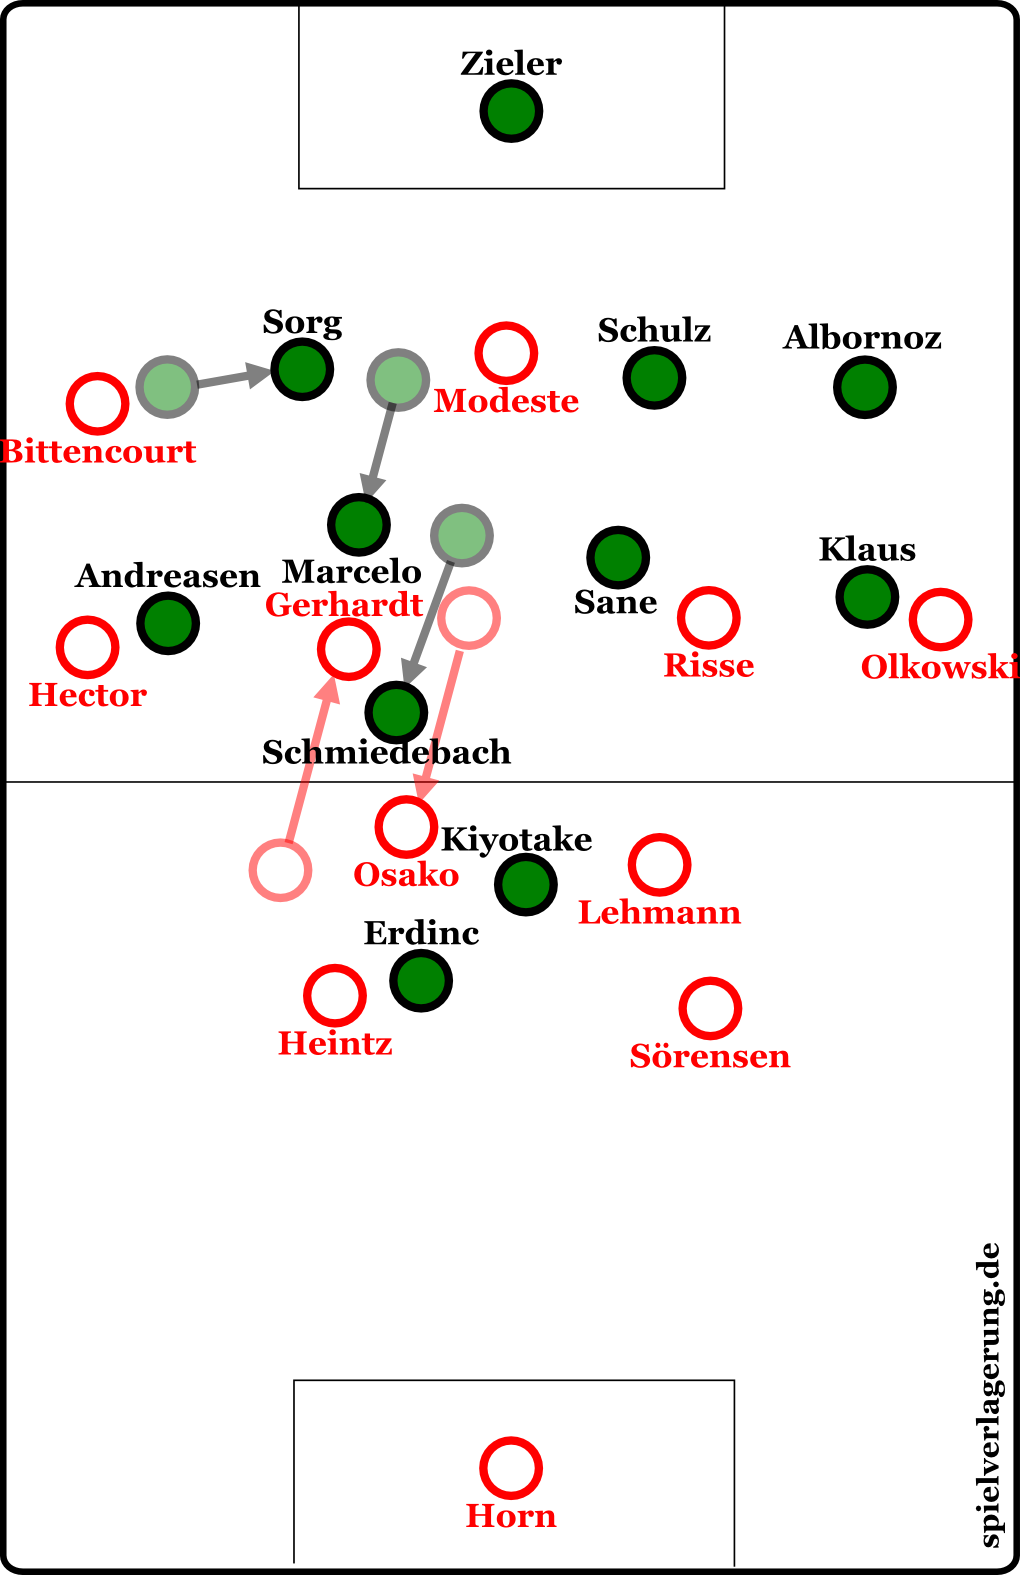 Kölns Spielidee: Osako zieht Schmiedebach mit sich, Sane muss auf Risse achten. Gerhardt stößt nach vorne und zieht Marcelo aus der Kette, wodurch wiederum Sorg einrücken muss. Und schon ist Platz auf dem linken Flügel für Bittencourt.